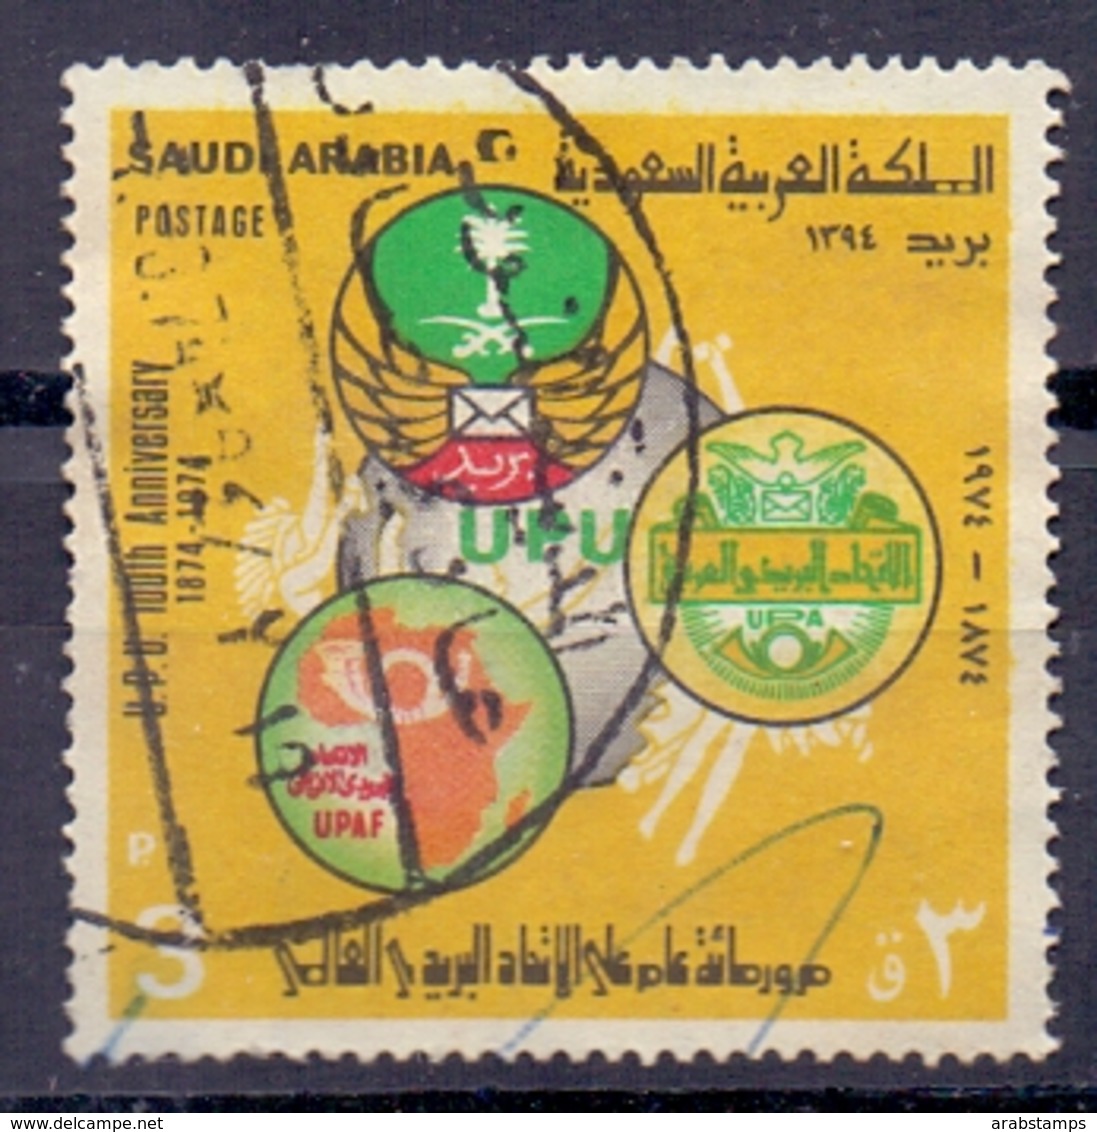 1974 Saudi Arabia UPU Used P.3 Right Watermark - Saudi Arabia